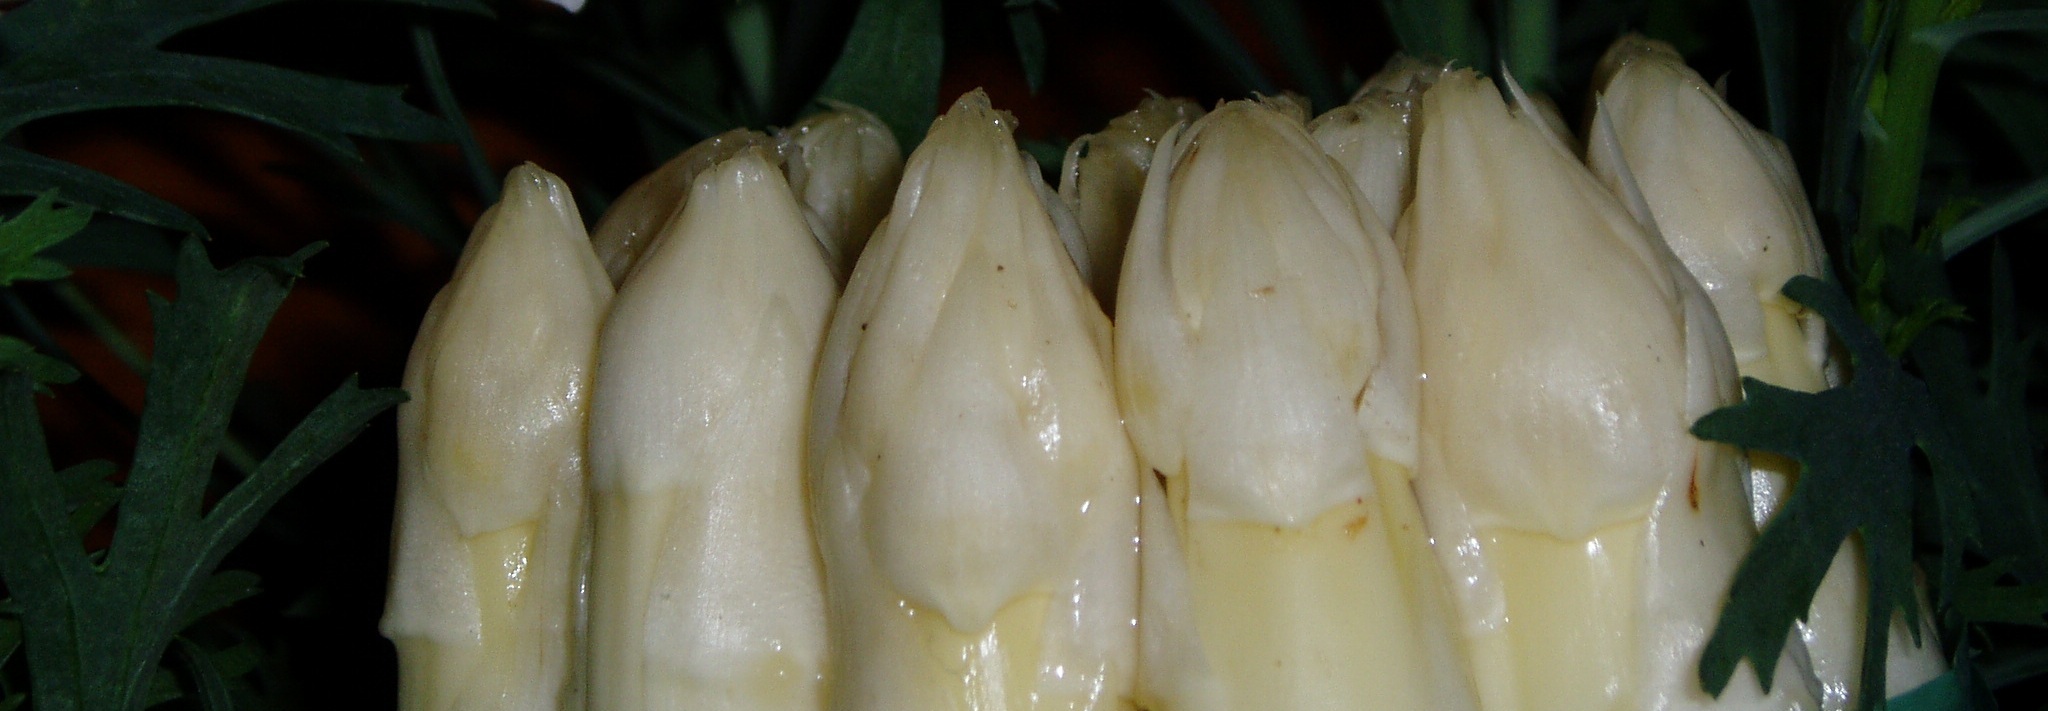 asparago bianco I.G.P. di Badoere